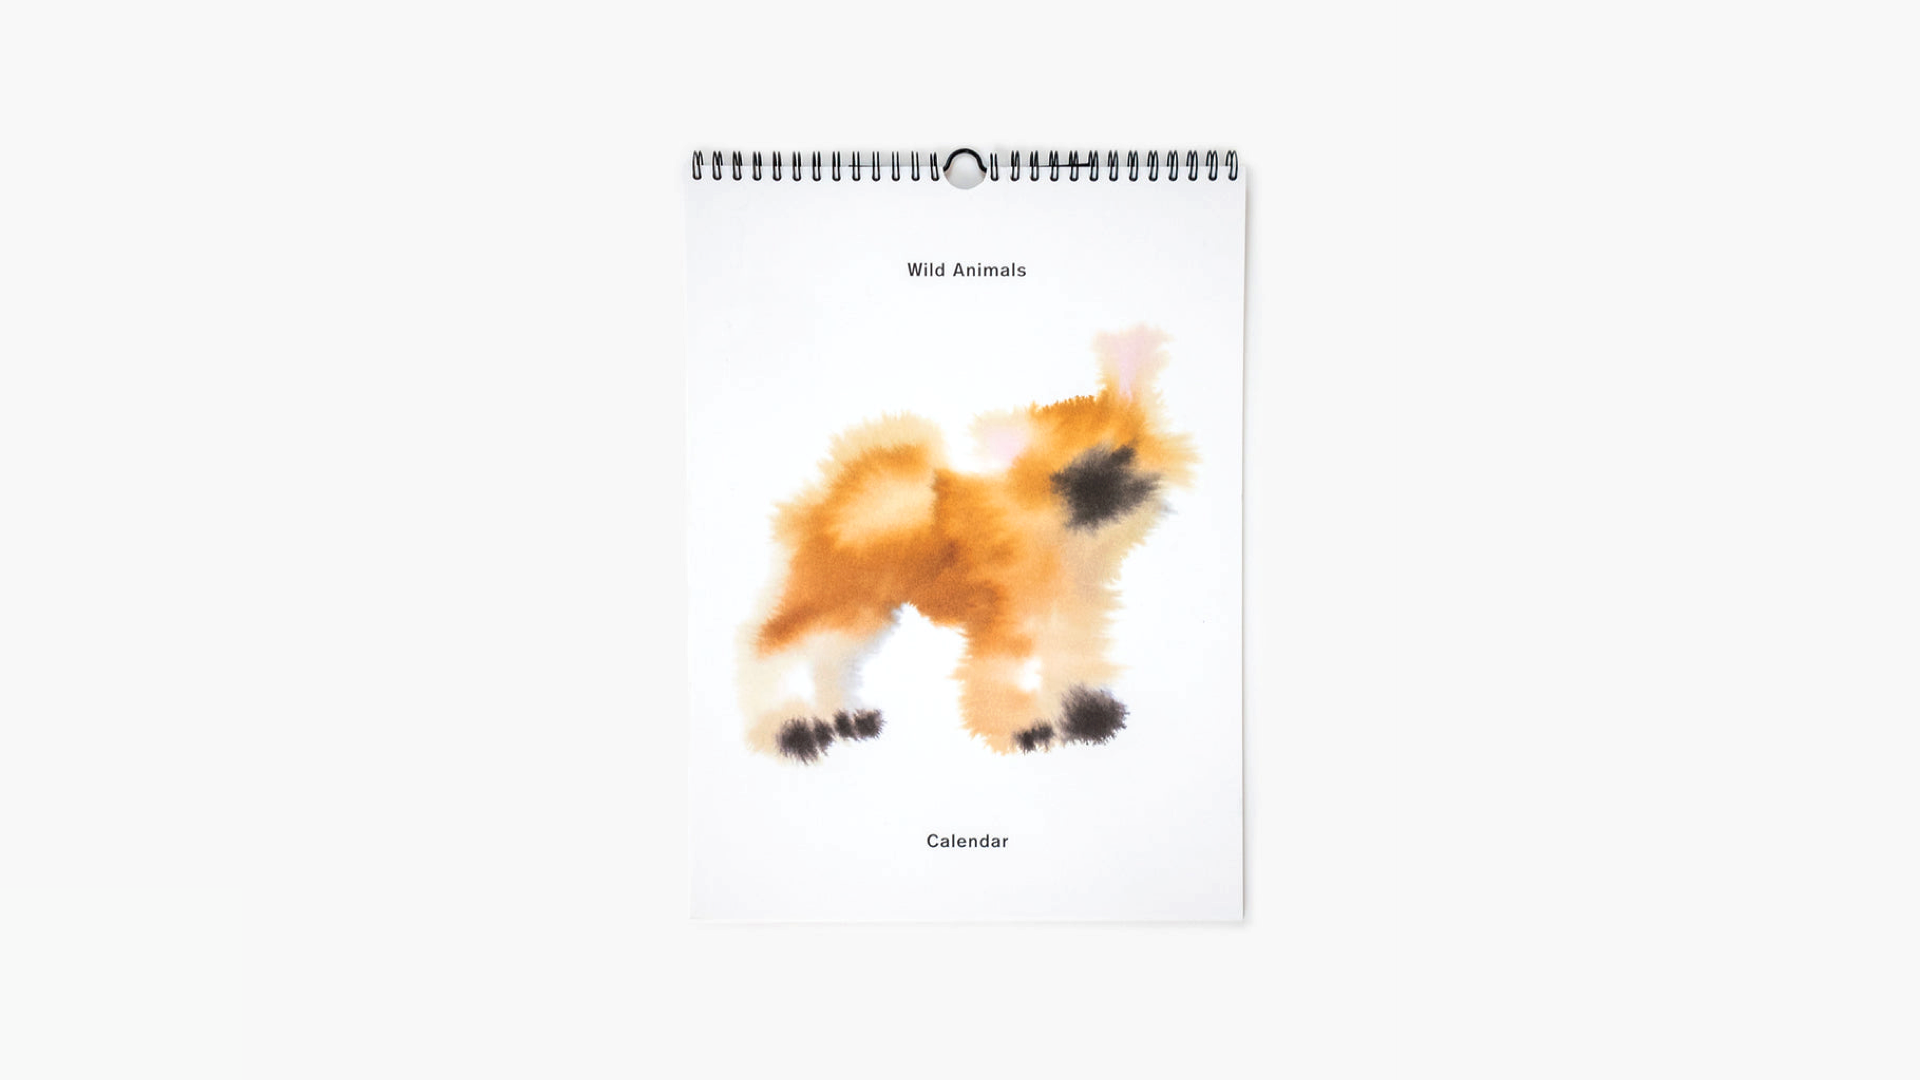 wild-animals-calendar-rop-van-mierlo-cover